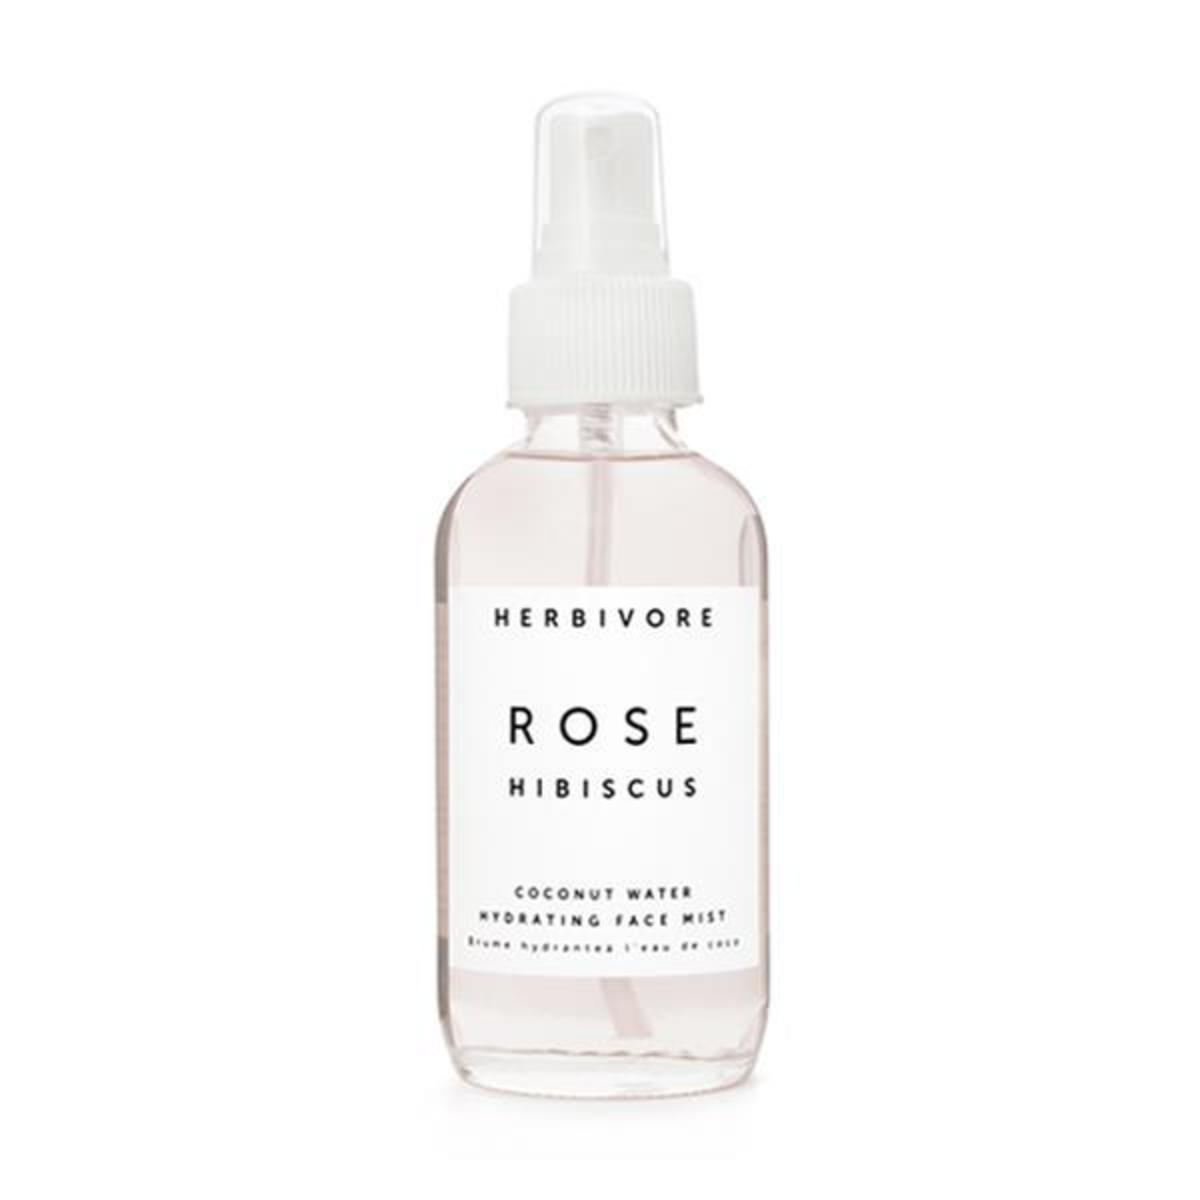 Herbivore Rose Hibiscus Hydrating Face Mist